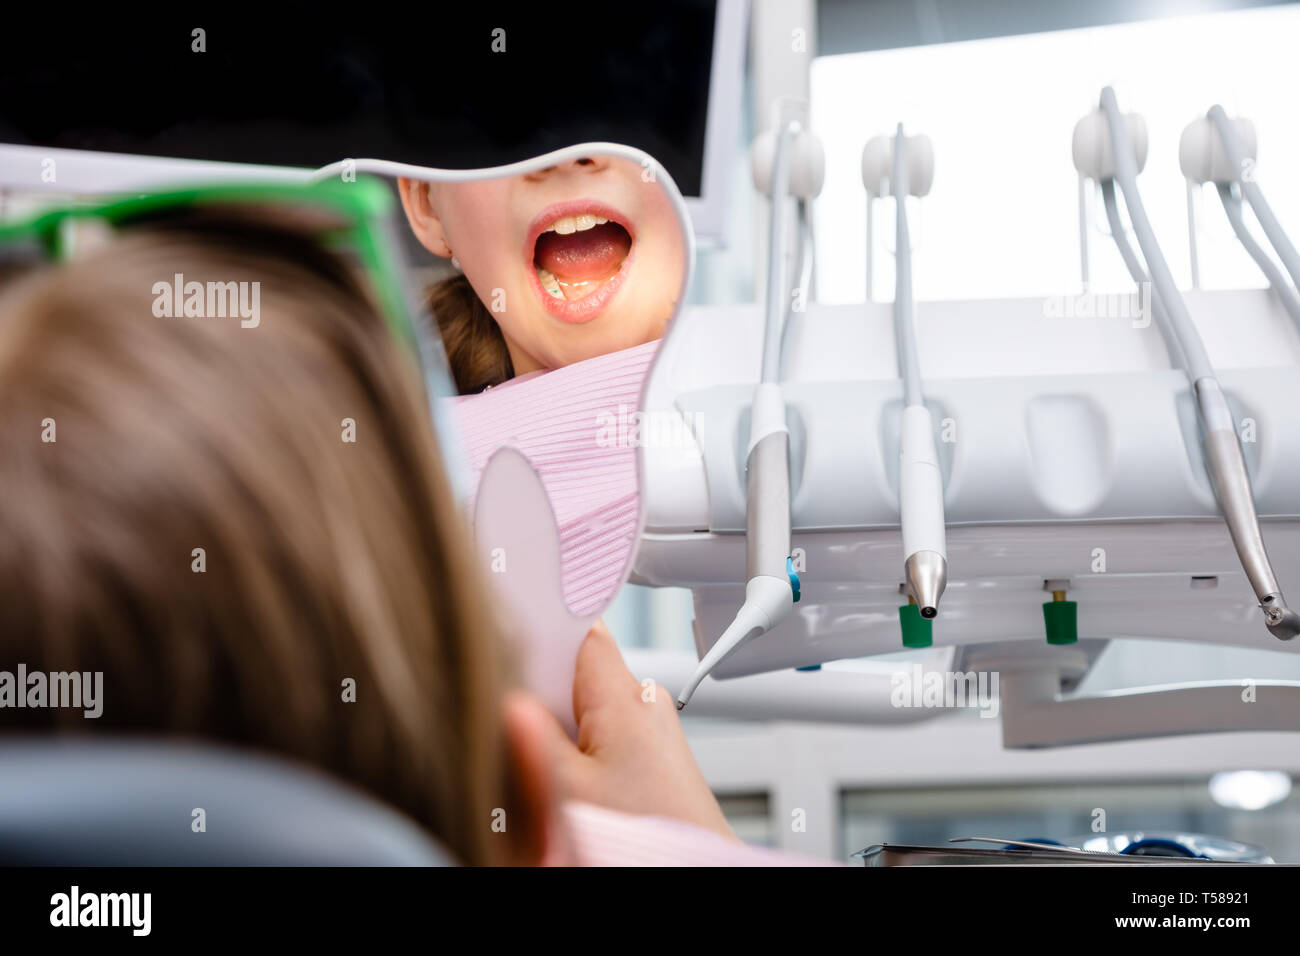 Preteen ragazza seduta in un riunito dentale di ispezionare i denti riparati guardando a forma di dente specchio in pazienti pediatrici clinica dentale Foto Stock